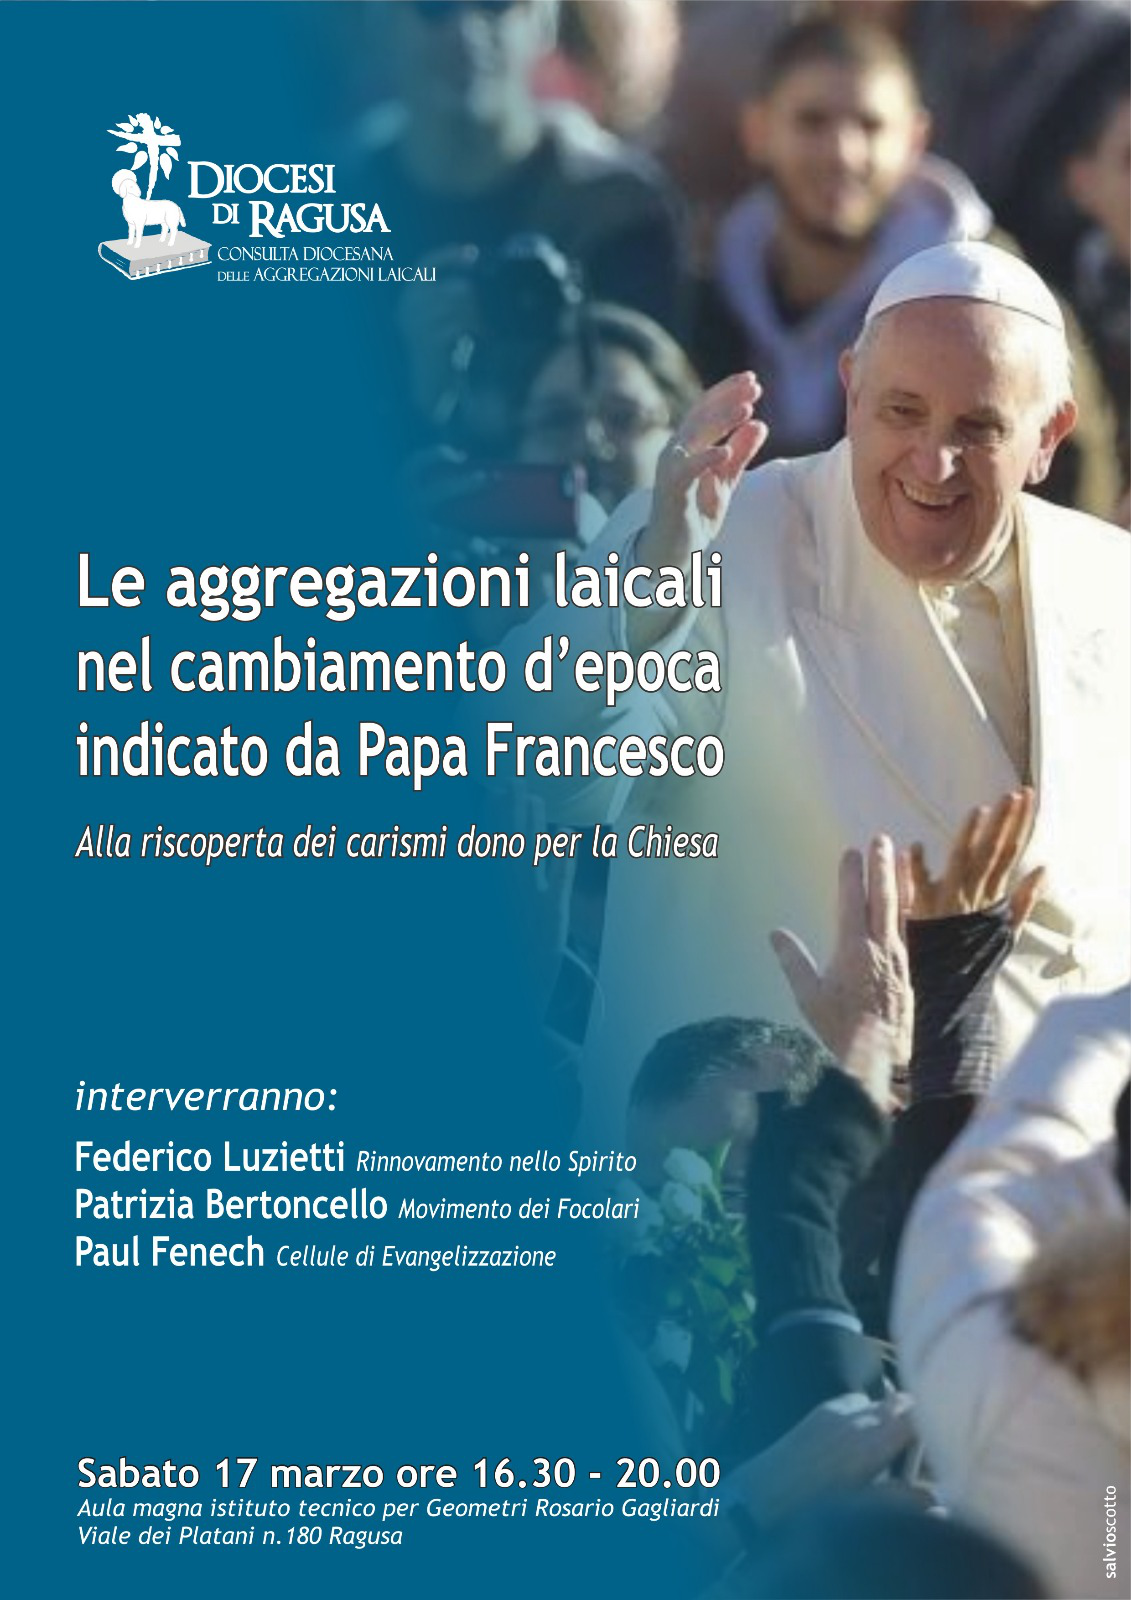 Le aggregazioni laicali nel cambiamento d'epoca indicato da Papa Francesco